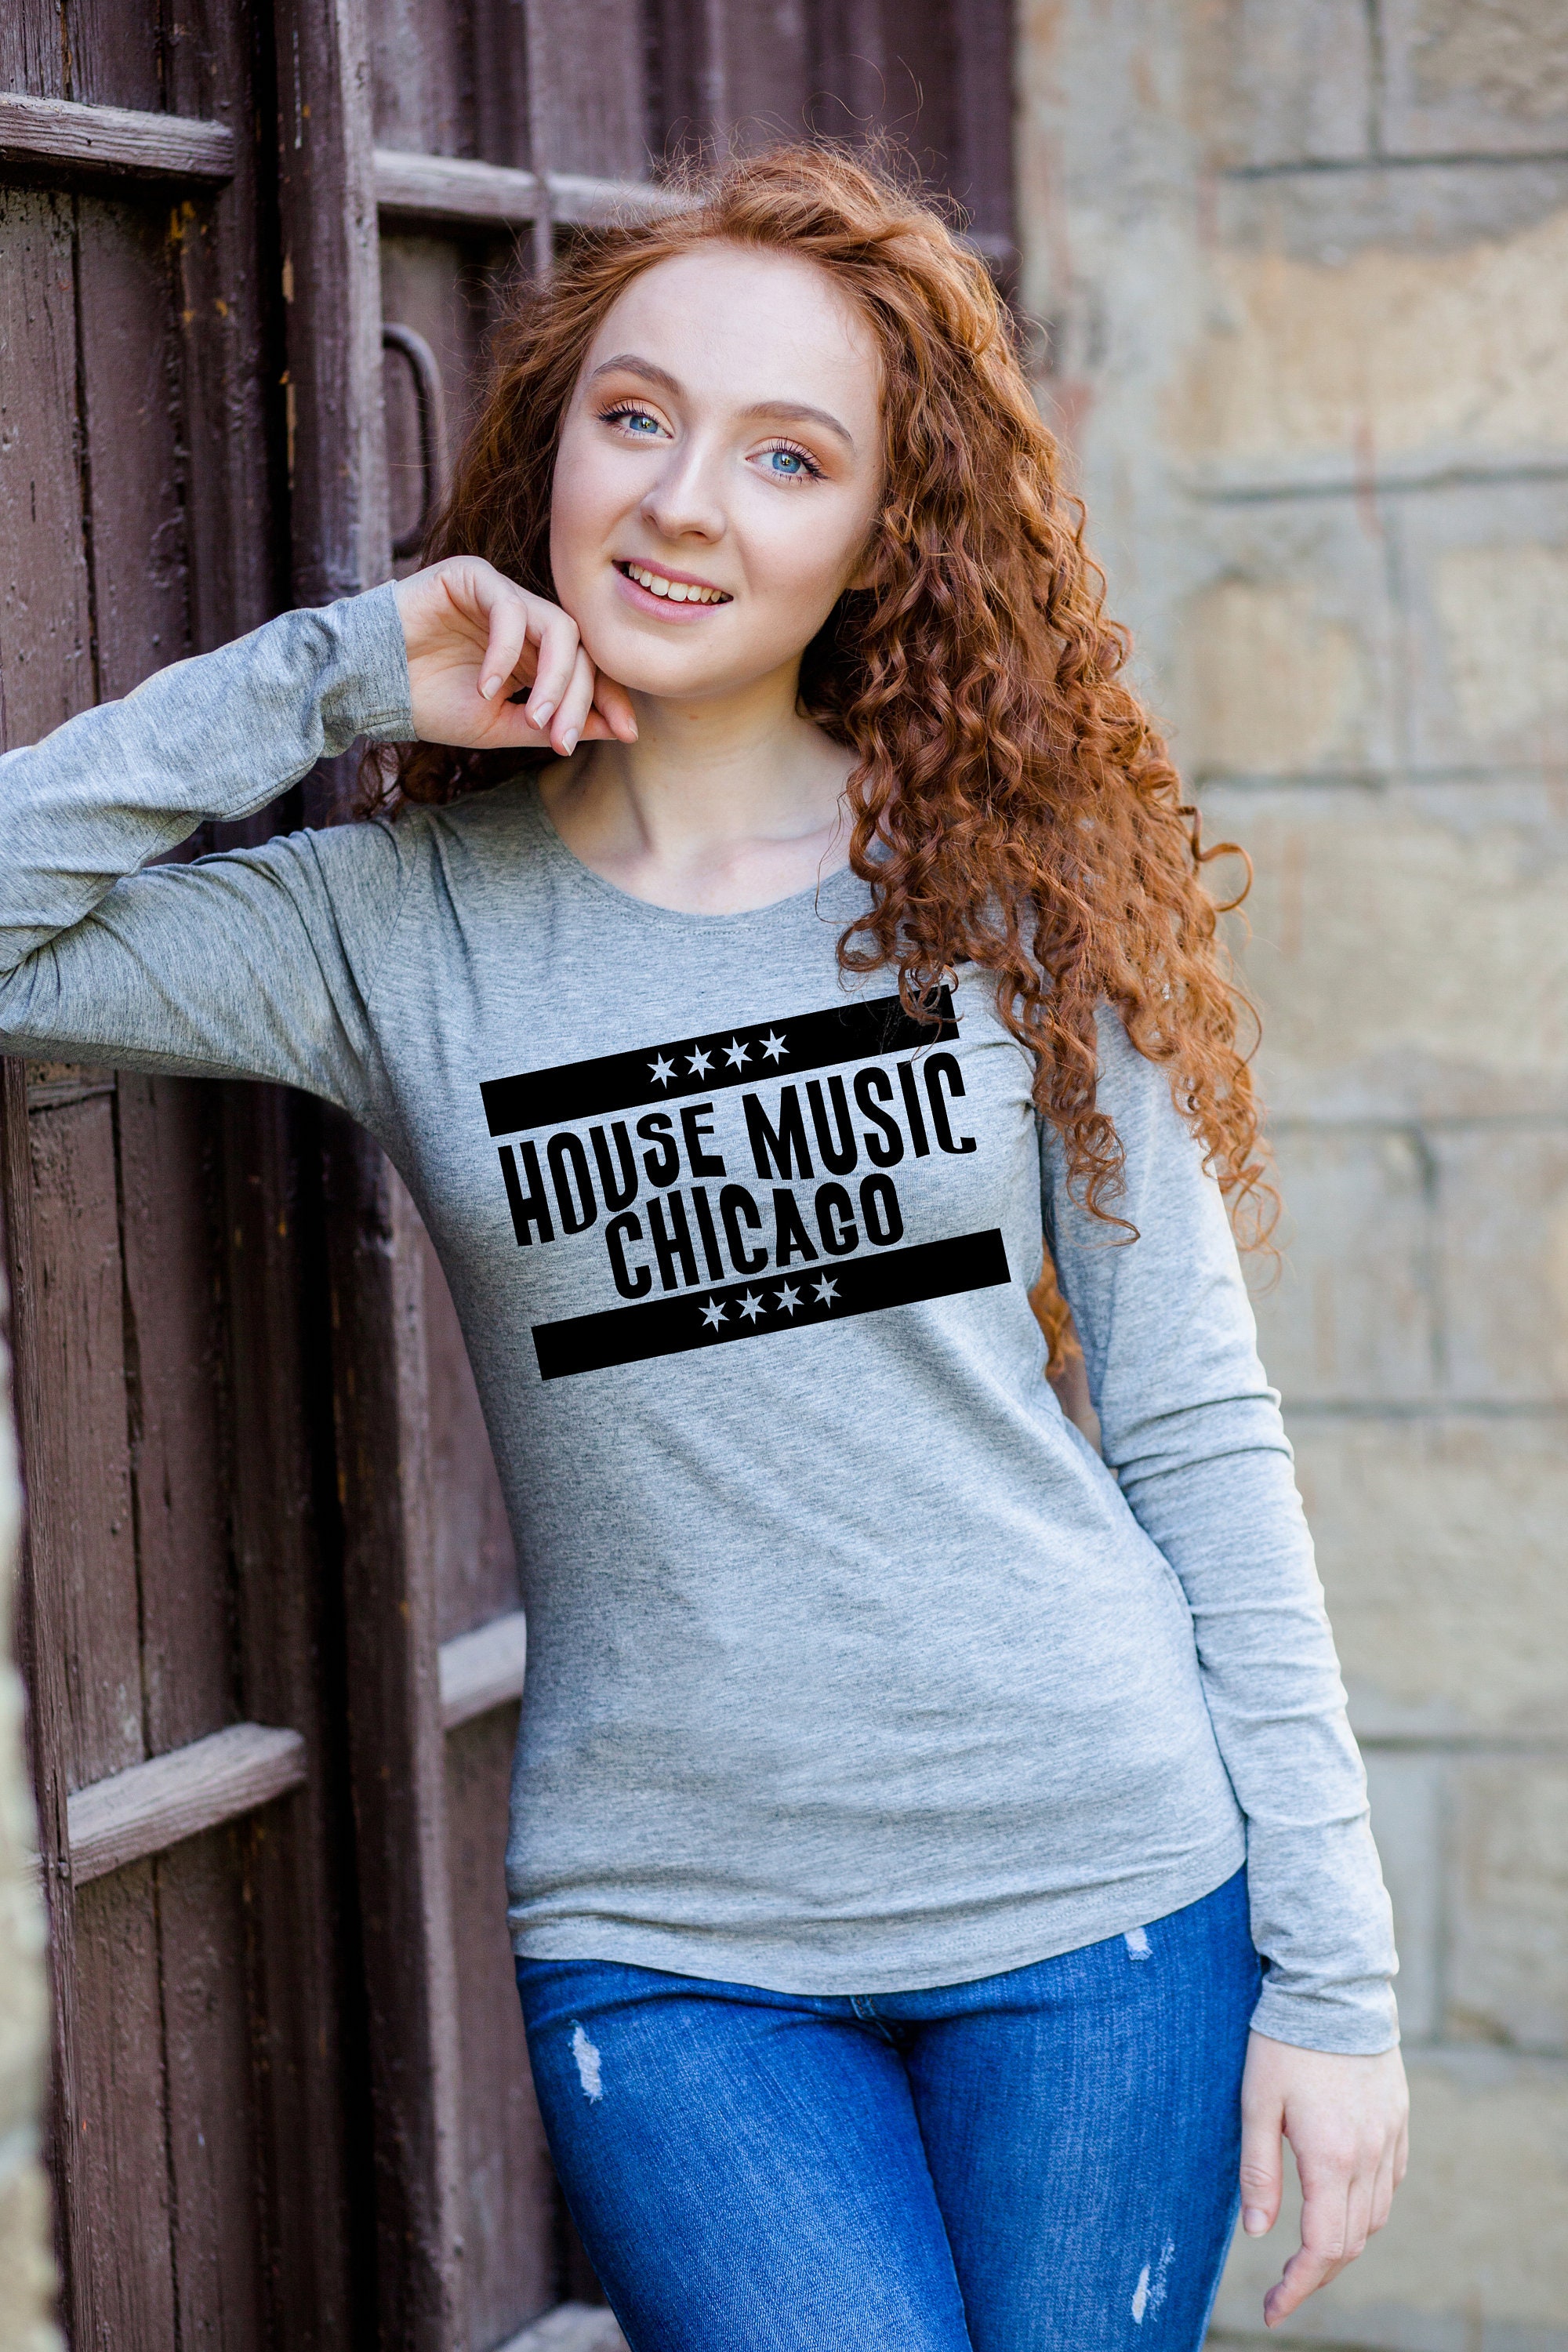 Chicago House Music Design Bulls - Chicago House - T-Shirt